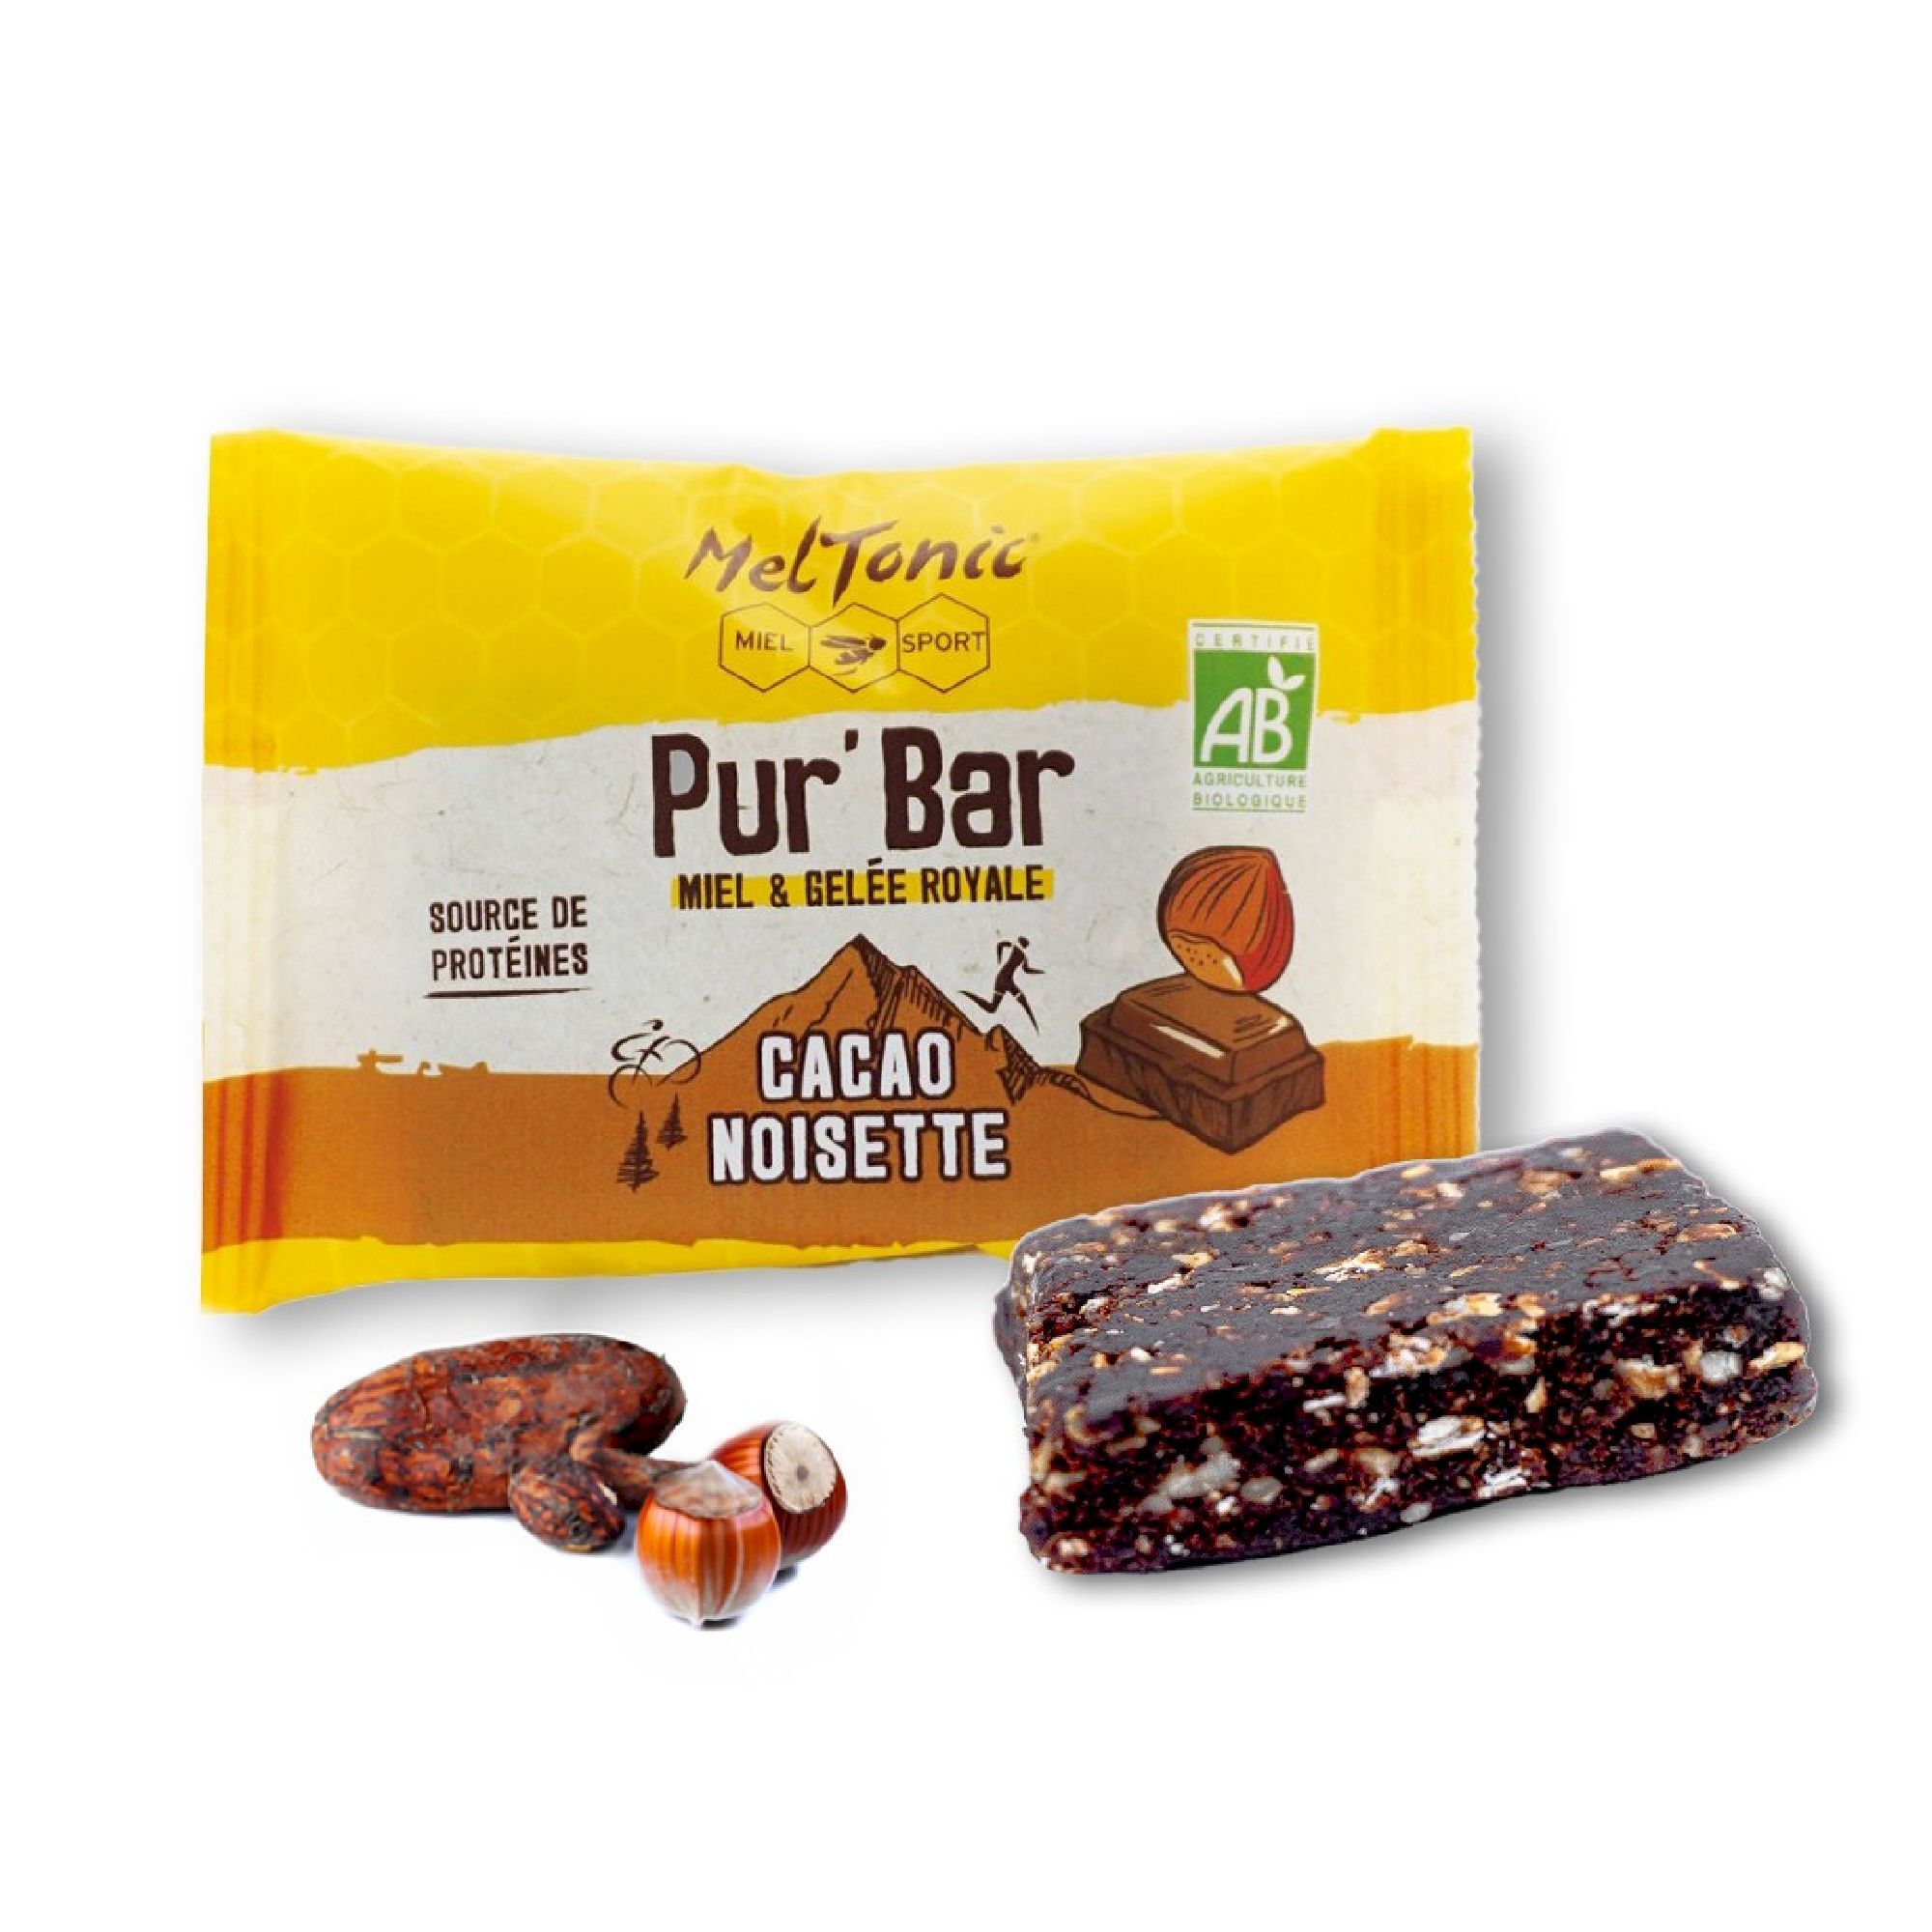 Meltonic Pur' Bar Bio Cacao Noisette Miel & Gelée Royale - Energierepen | Hardloop